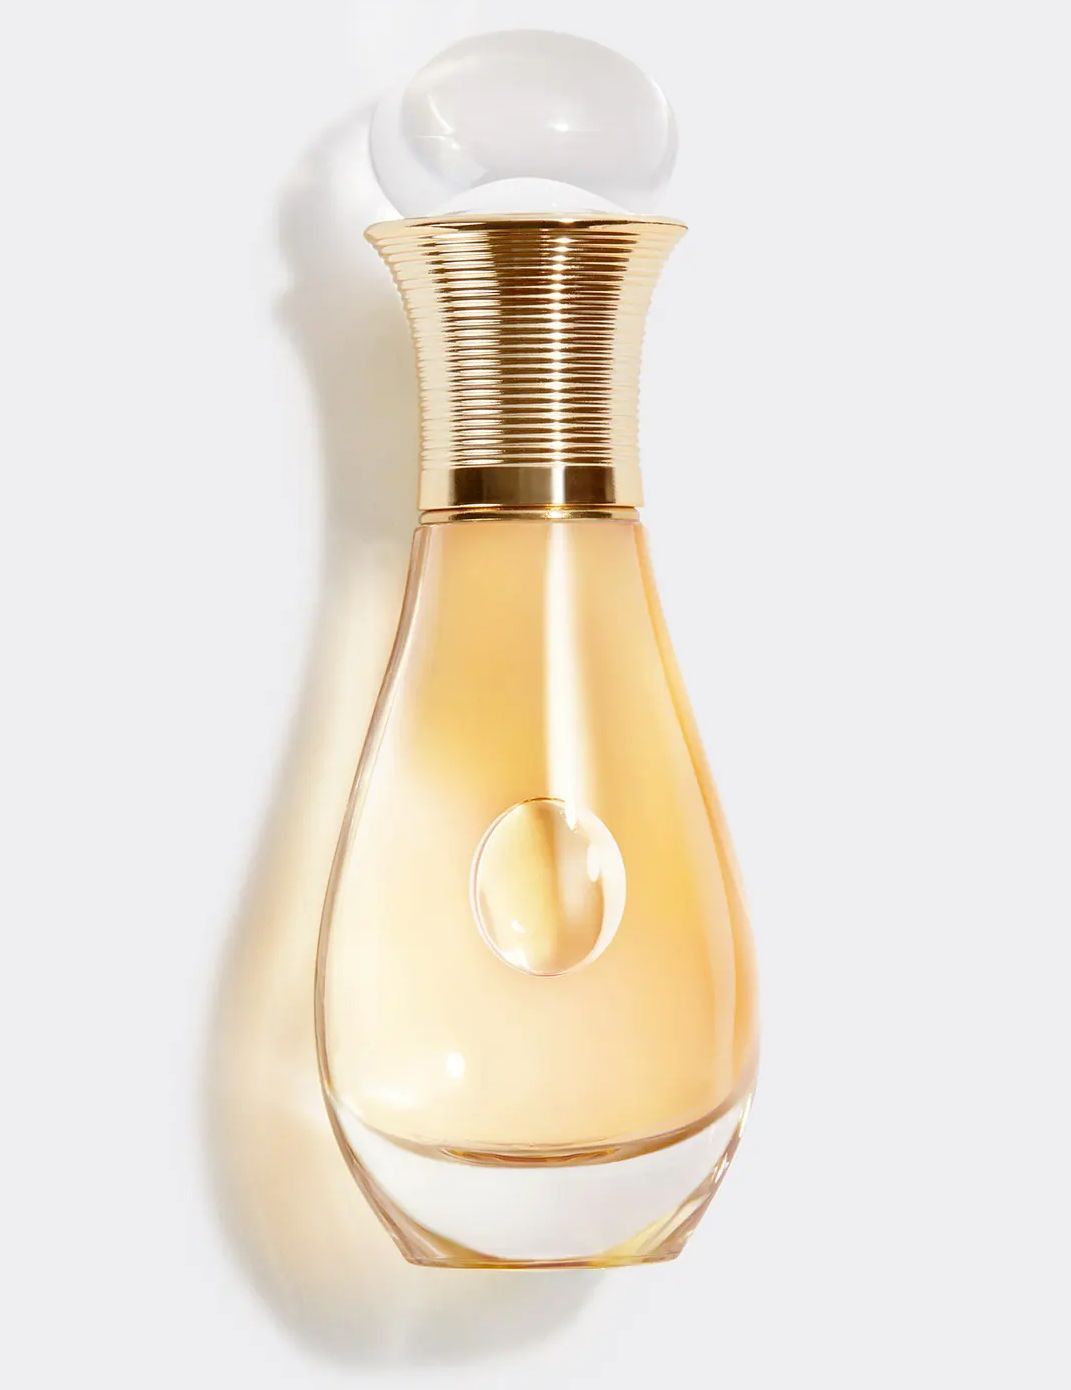 Review] Nước hoa Chanel nữ mùi nào thơm nhất? Giá bao nhiêu?